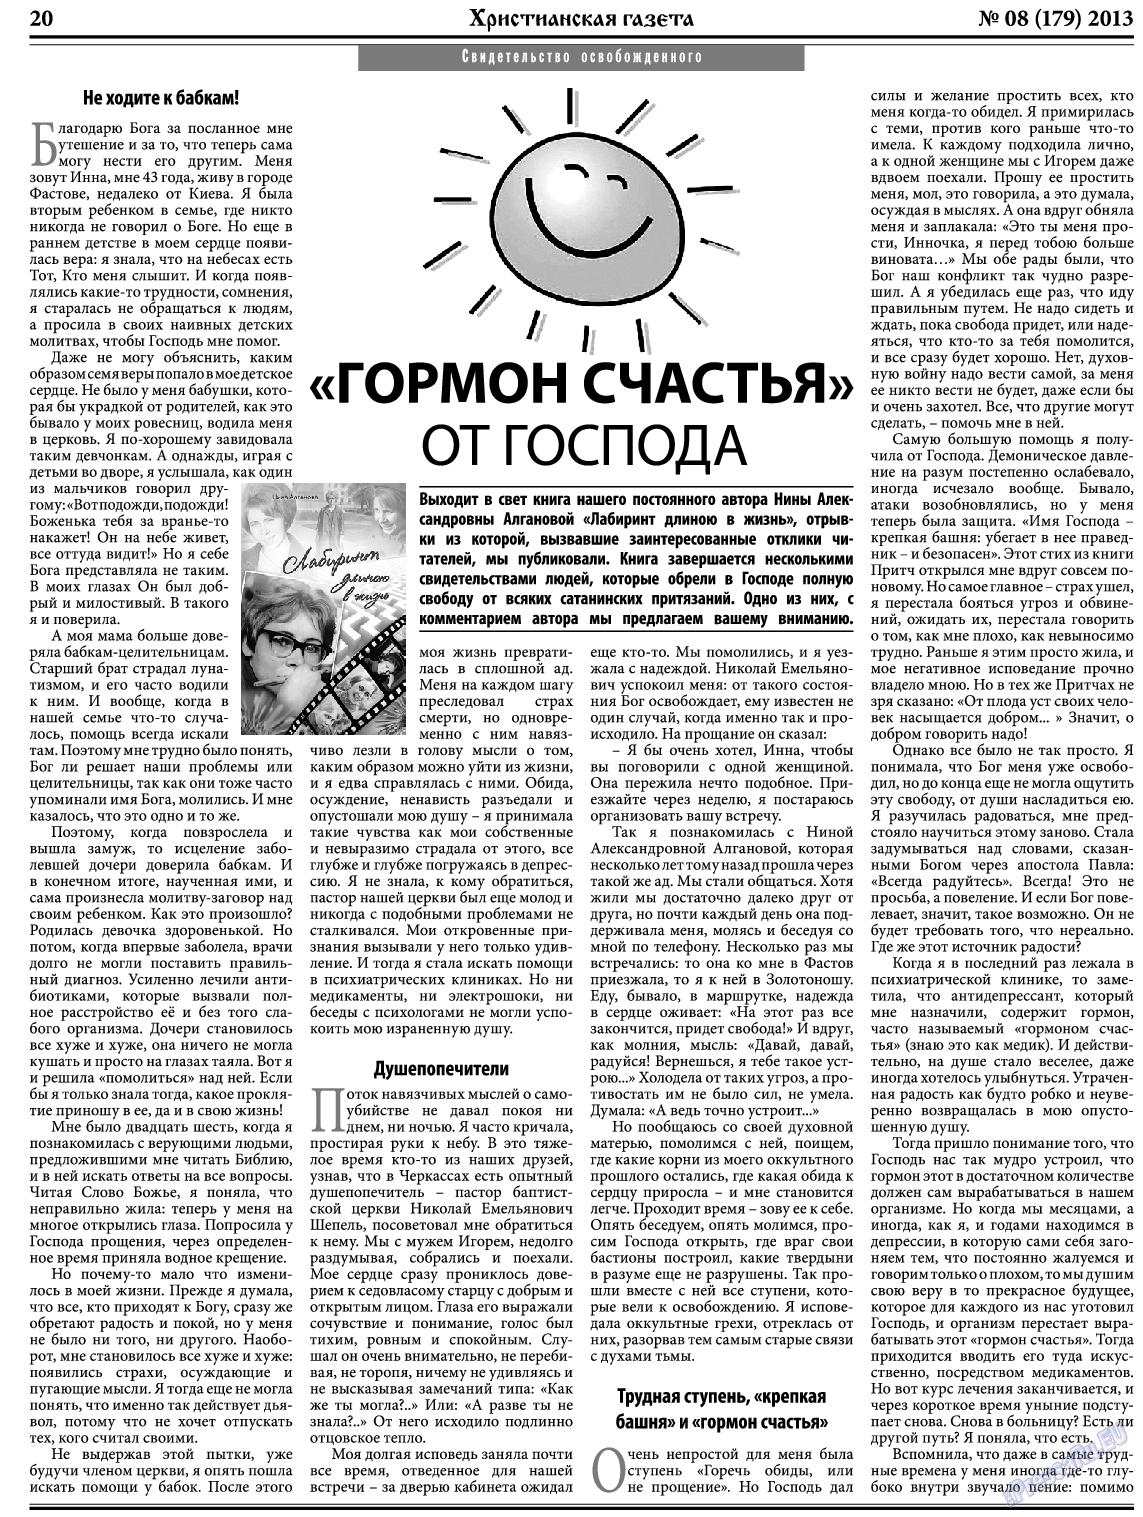 Христианская газета, газета. 2013 №8 стр.28